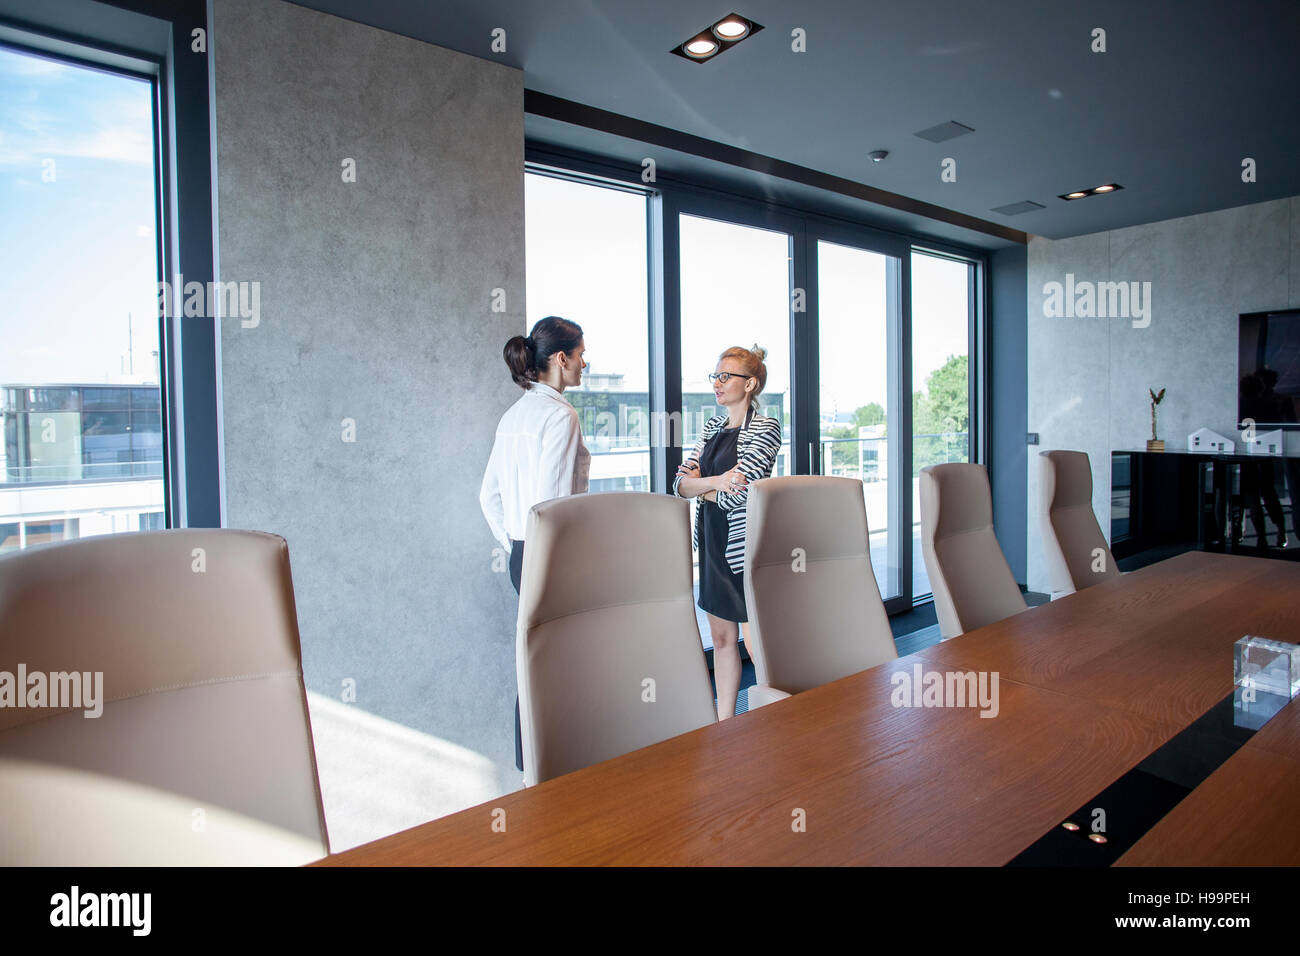 Two businesswomen talking in board room Stock Photo